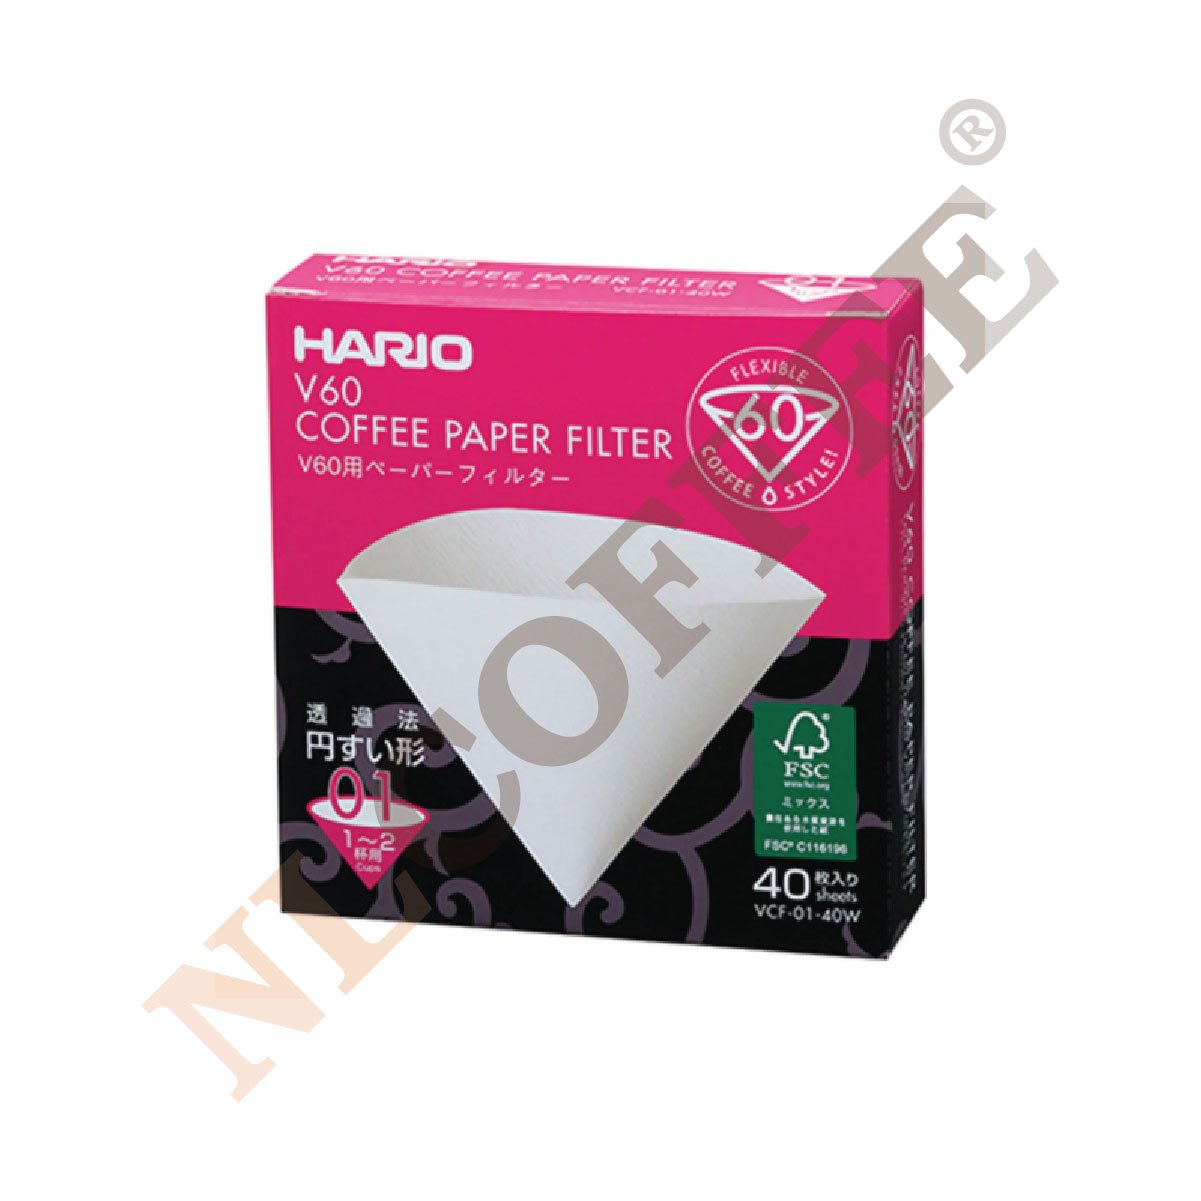 กระดาษกรอง Hario 01  V60 Paper Filter White 01